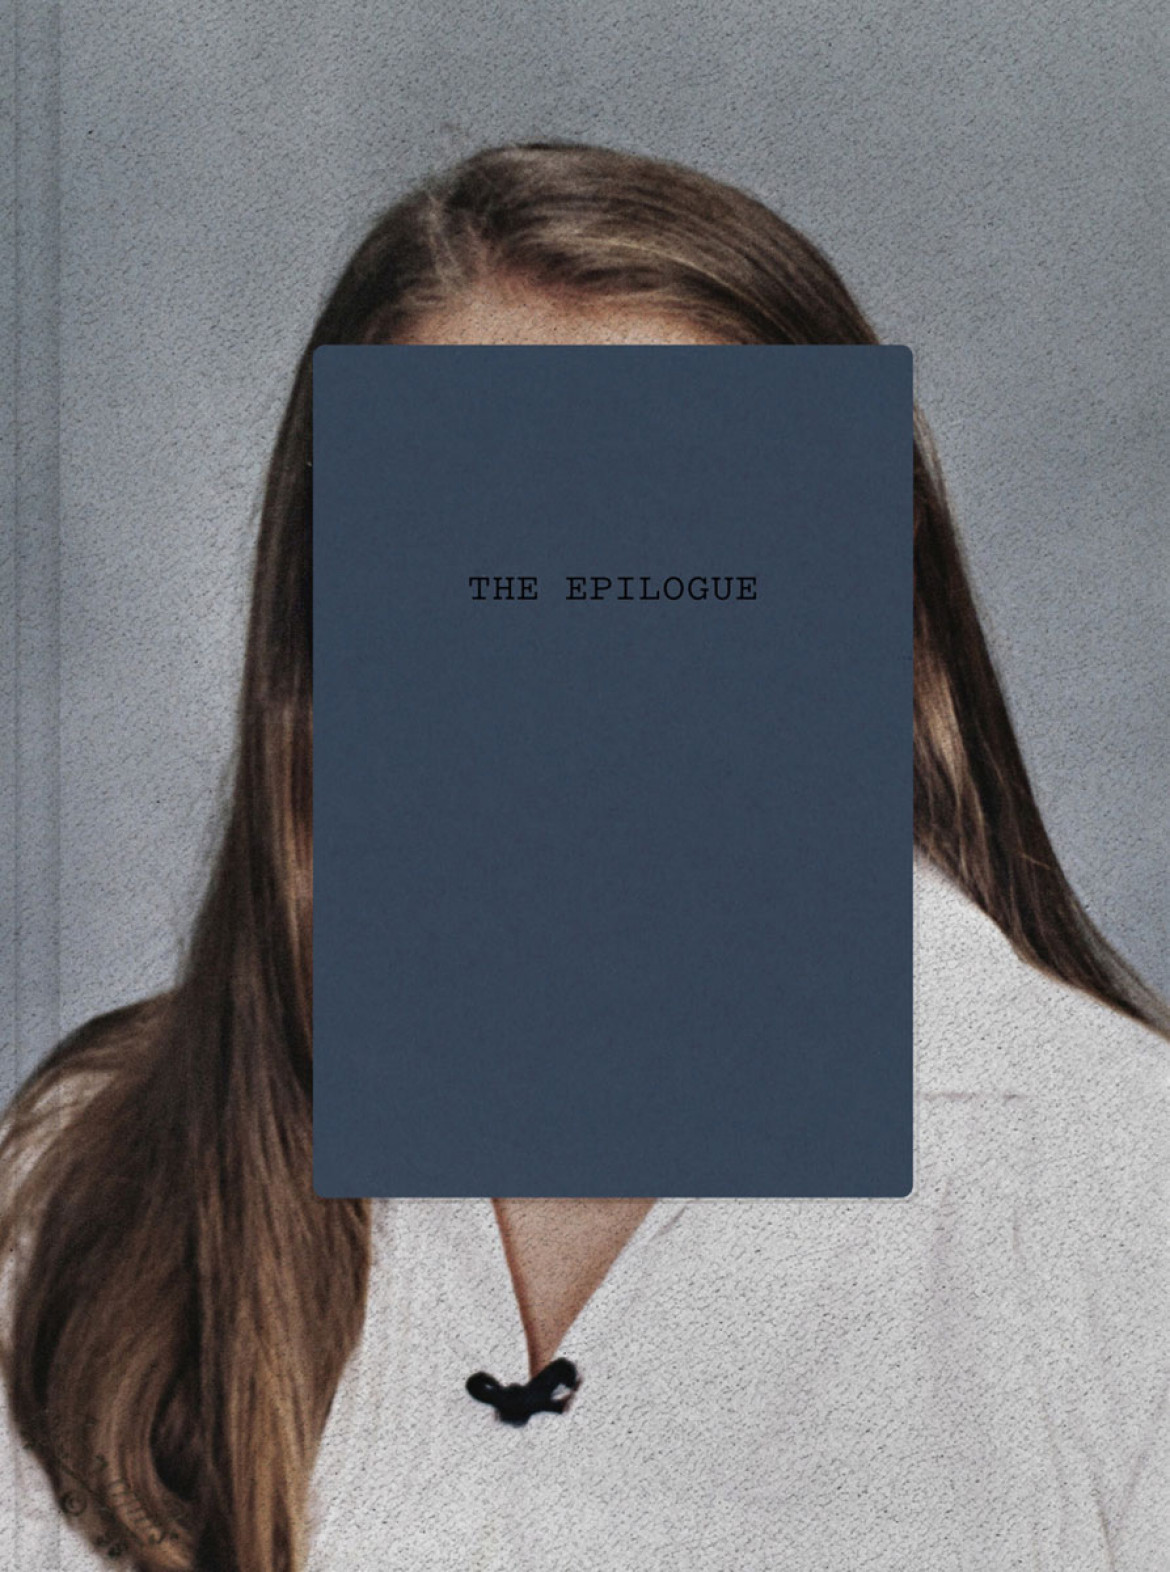 Laia Abril "The Epilogue", Dewi Lewis 2014